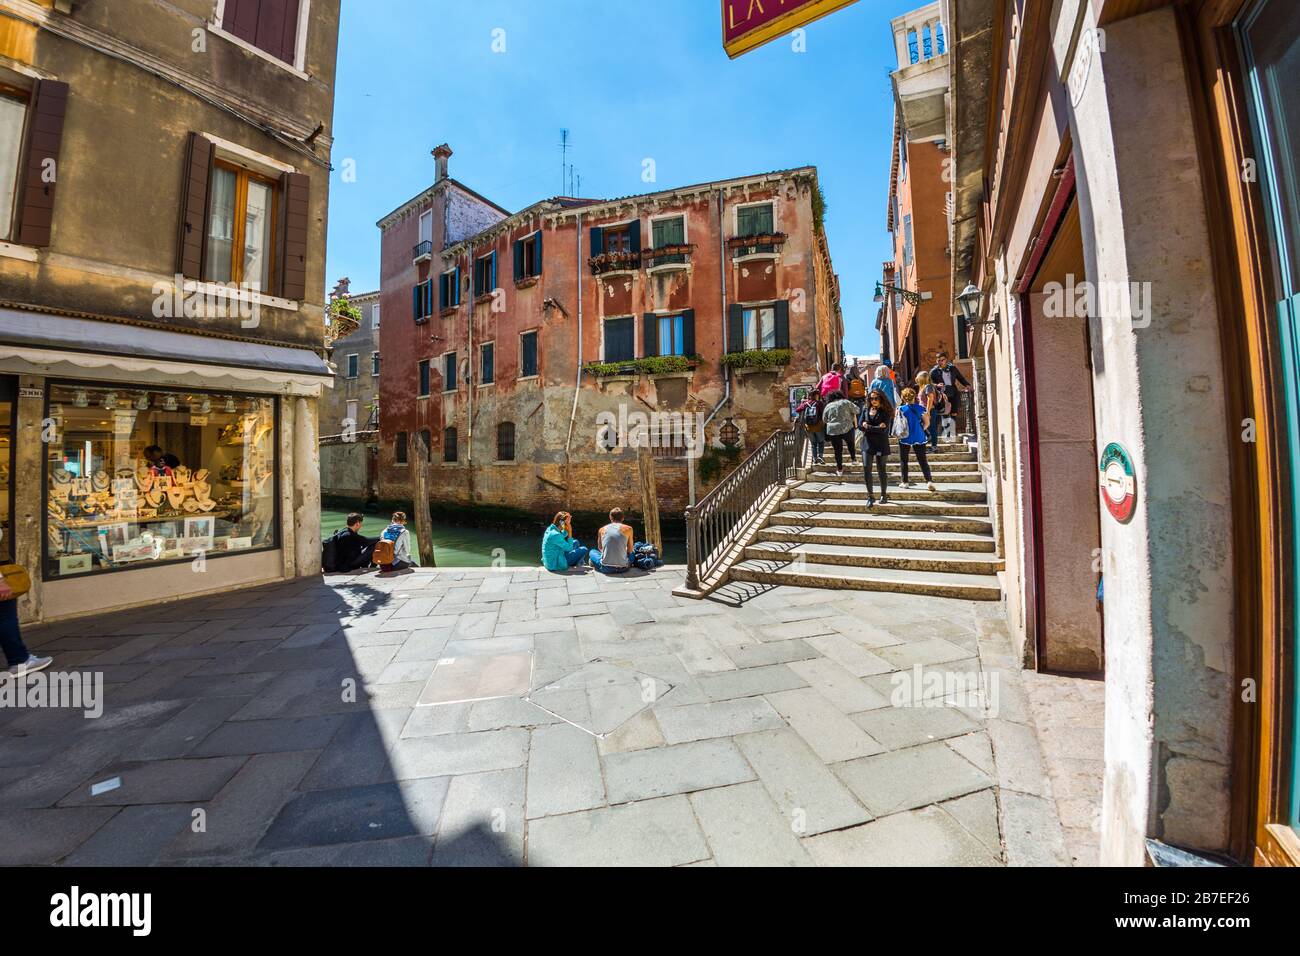 Venise, Italie - 16 MAI 2019: Les touristes se reposent sur le remblai de pierre du canal - c'est Venise Banque D'Images